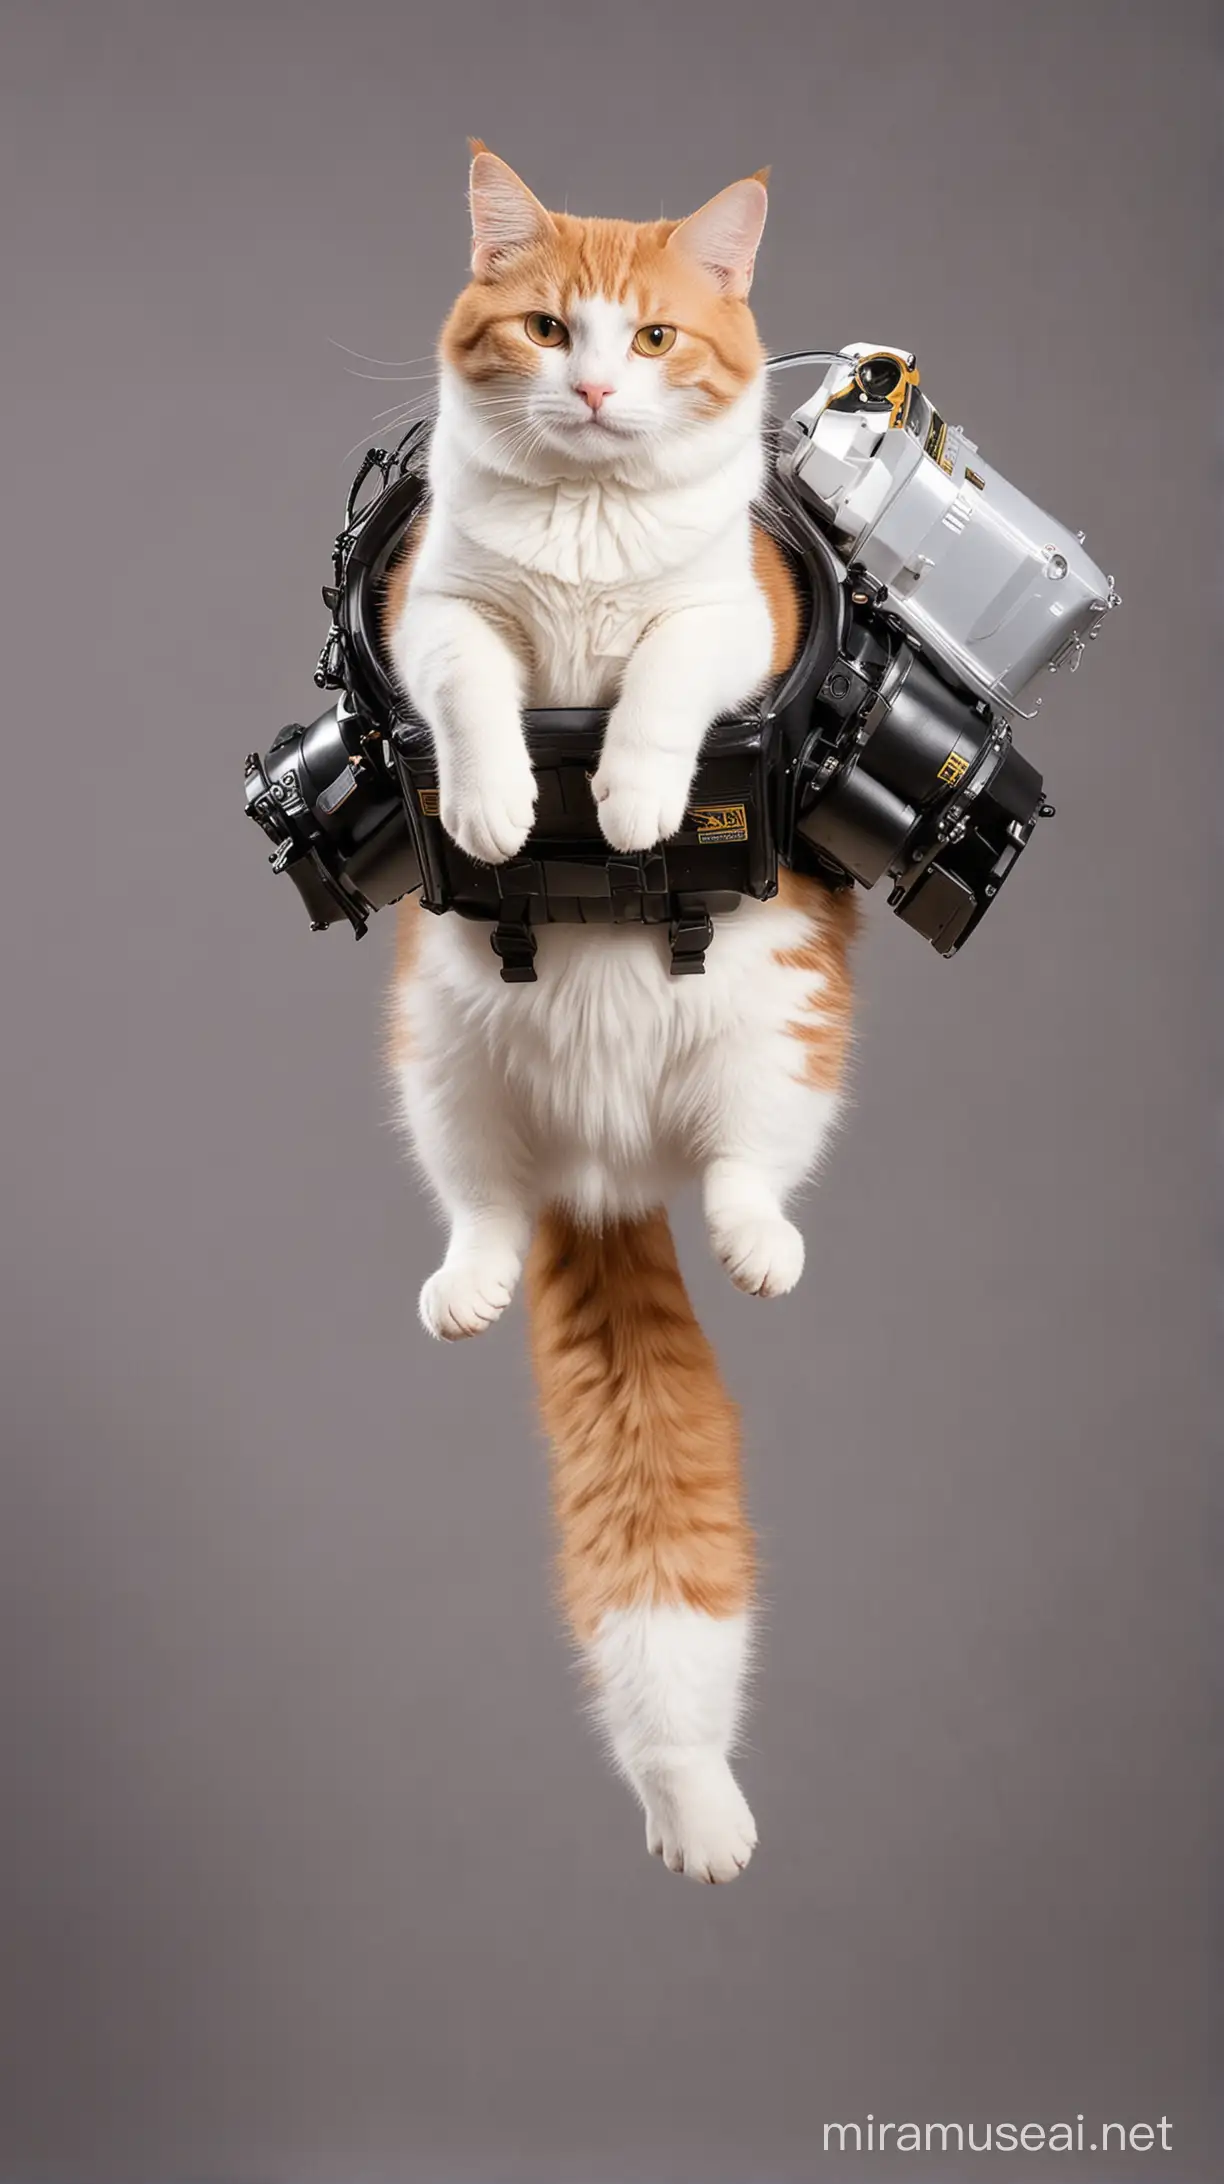 Feline Adventurer Soaring with Jetpack